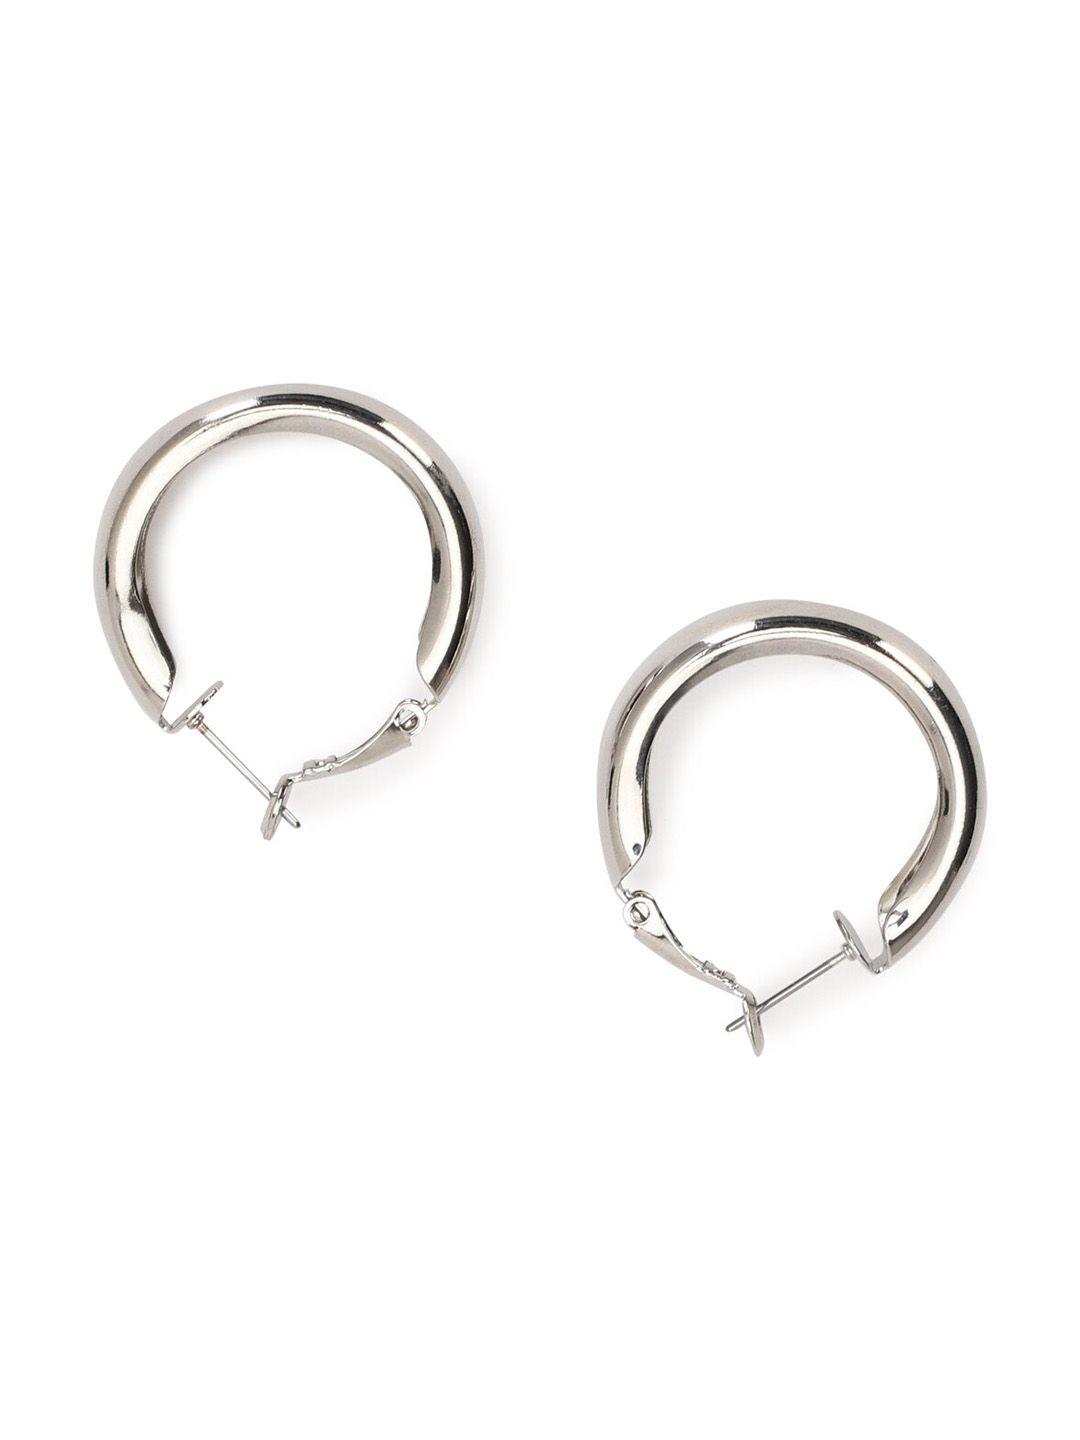 forever-21-silver-toned-circular-hoop-earrings